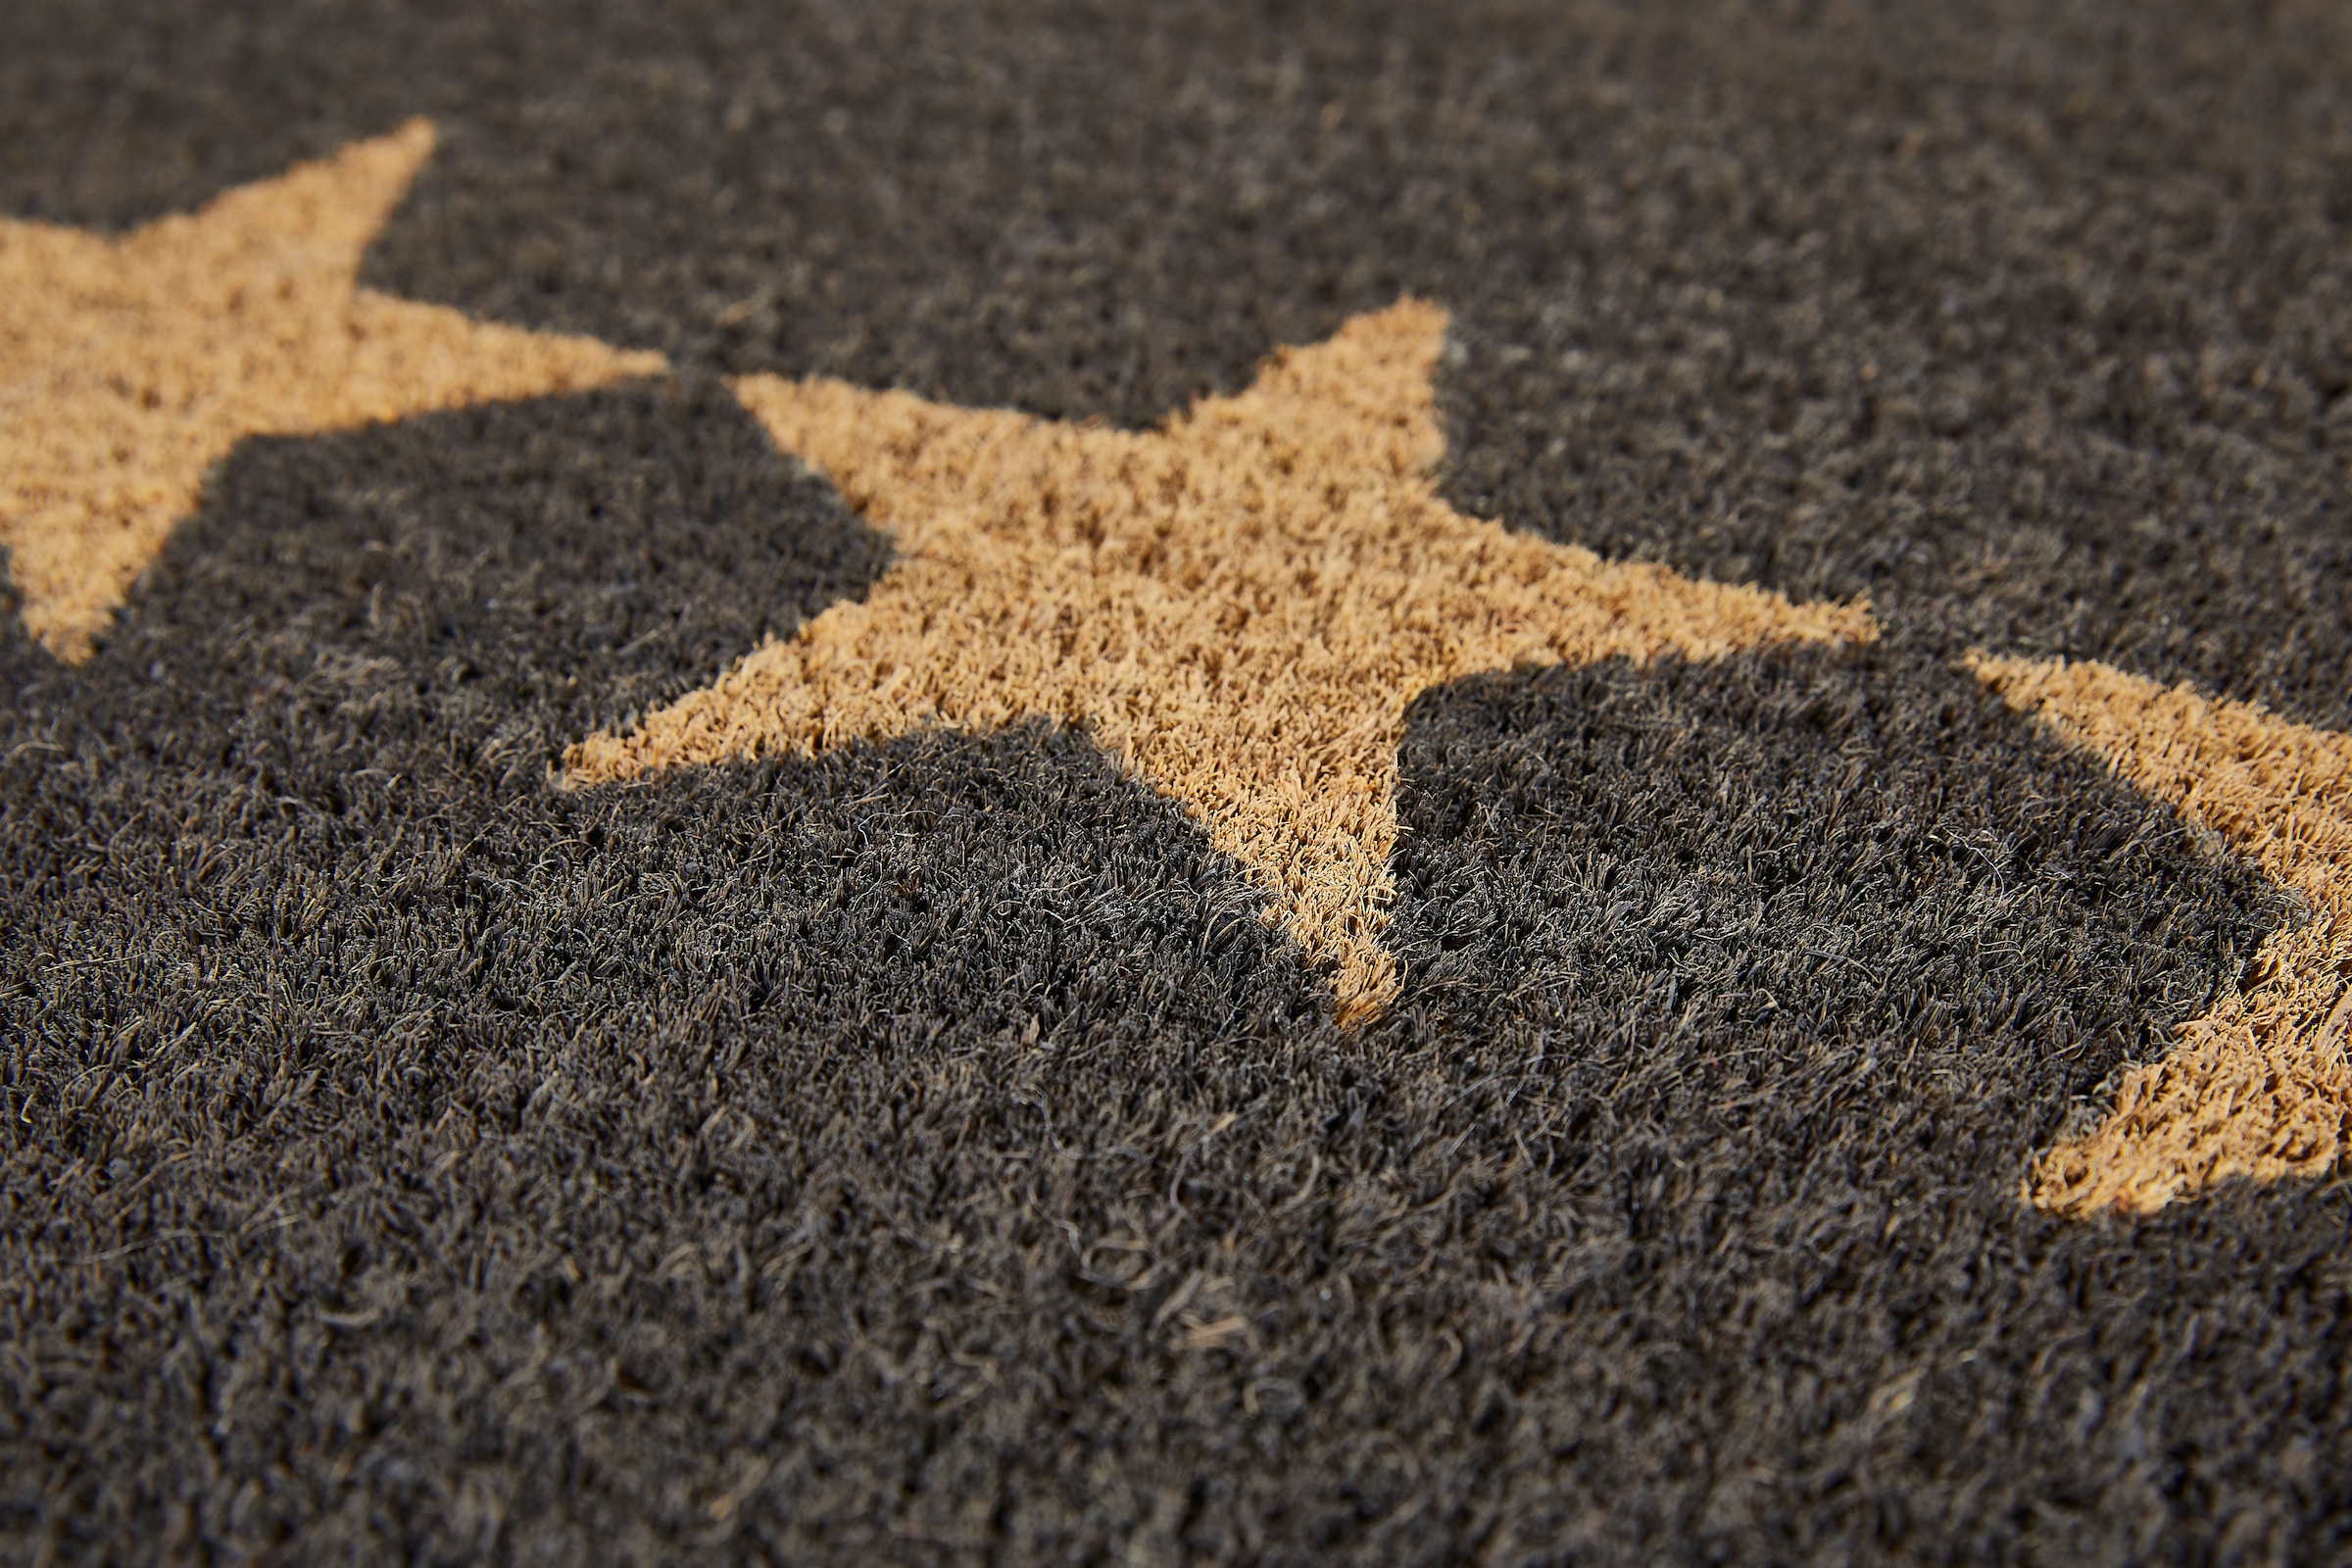 Andiamo Fußmatte »Kokos Star«, rechteckig, Schmutzfangmatte, Motiv Sterne,  In- und Outdoor geeignet bestellen online bei OTTO